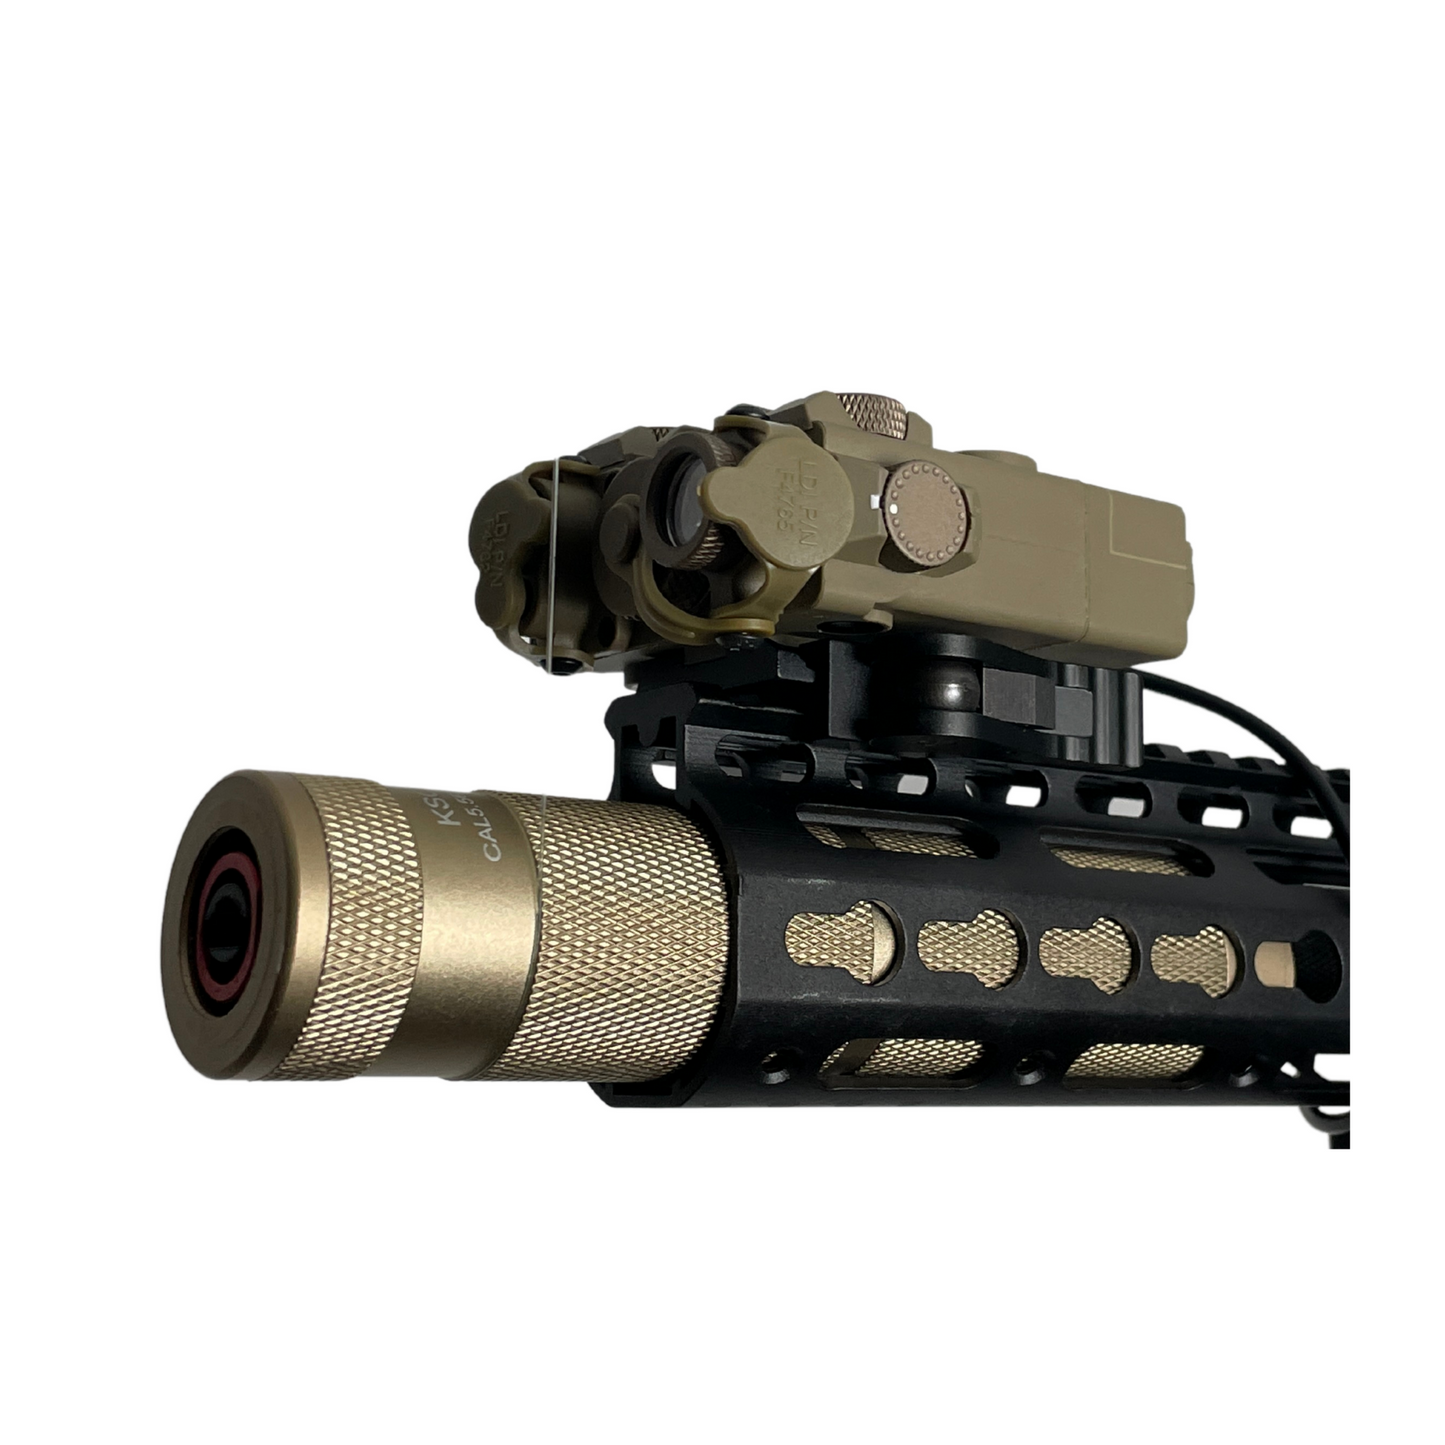 Custom "OP Tactical" M4 (Metal) Gel Blaster